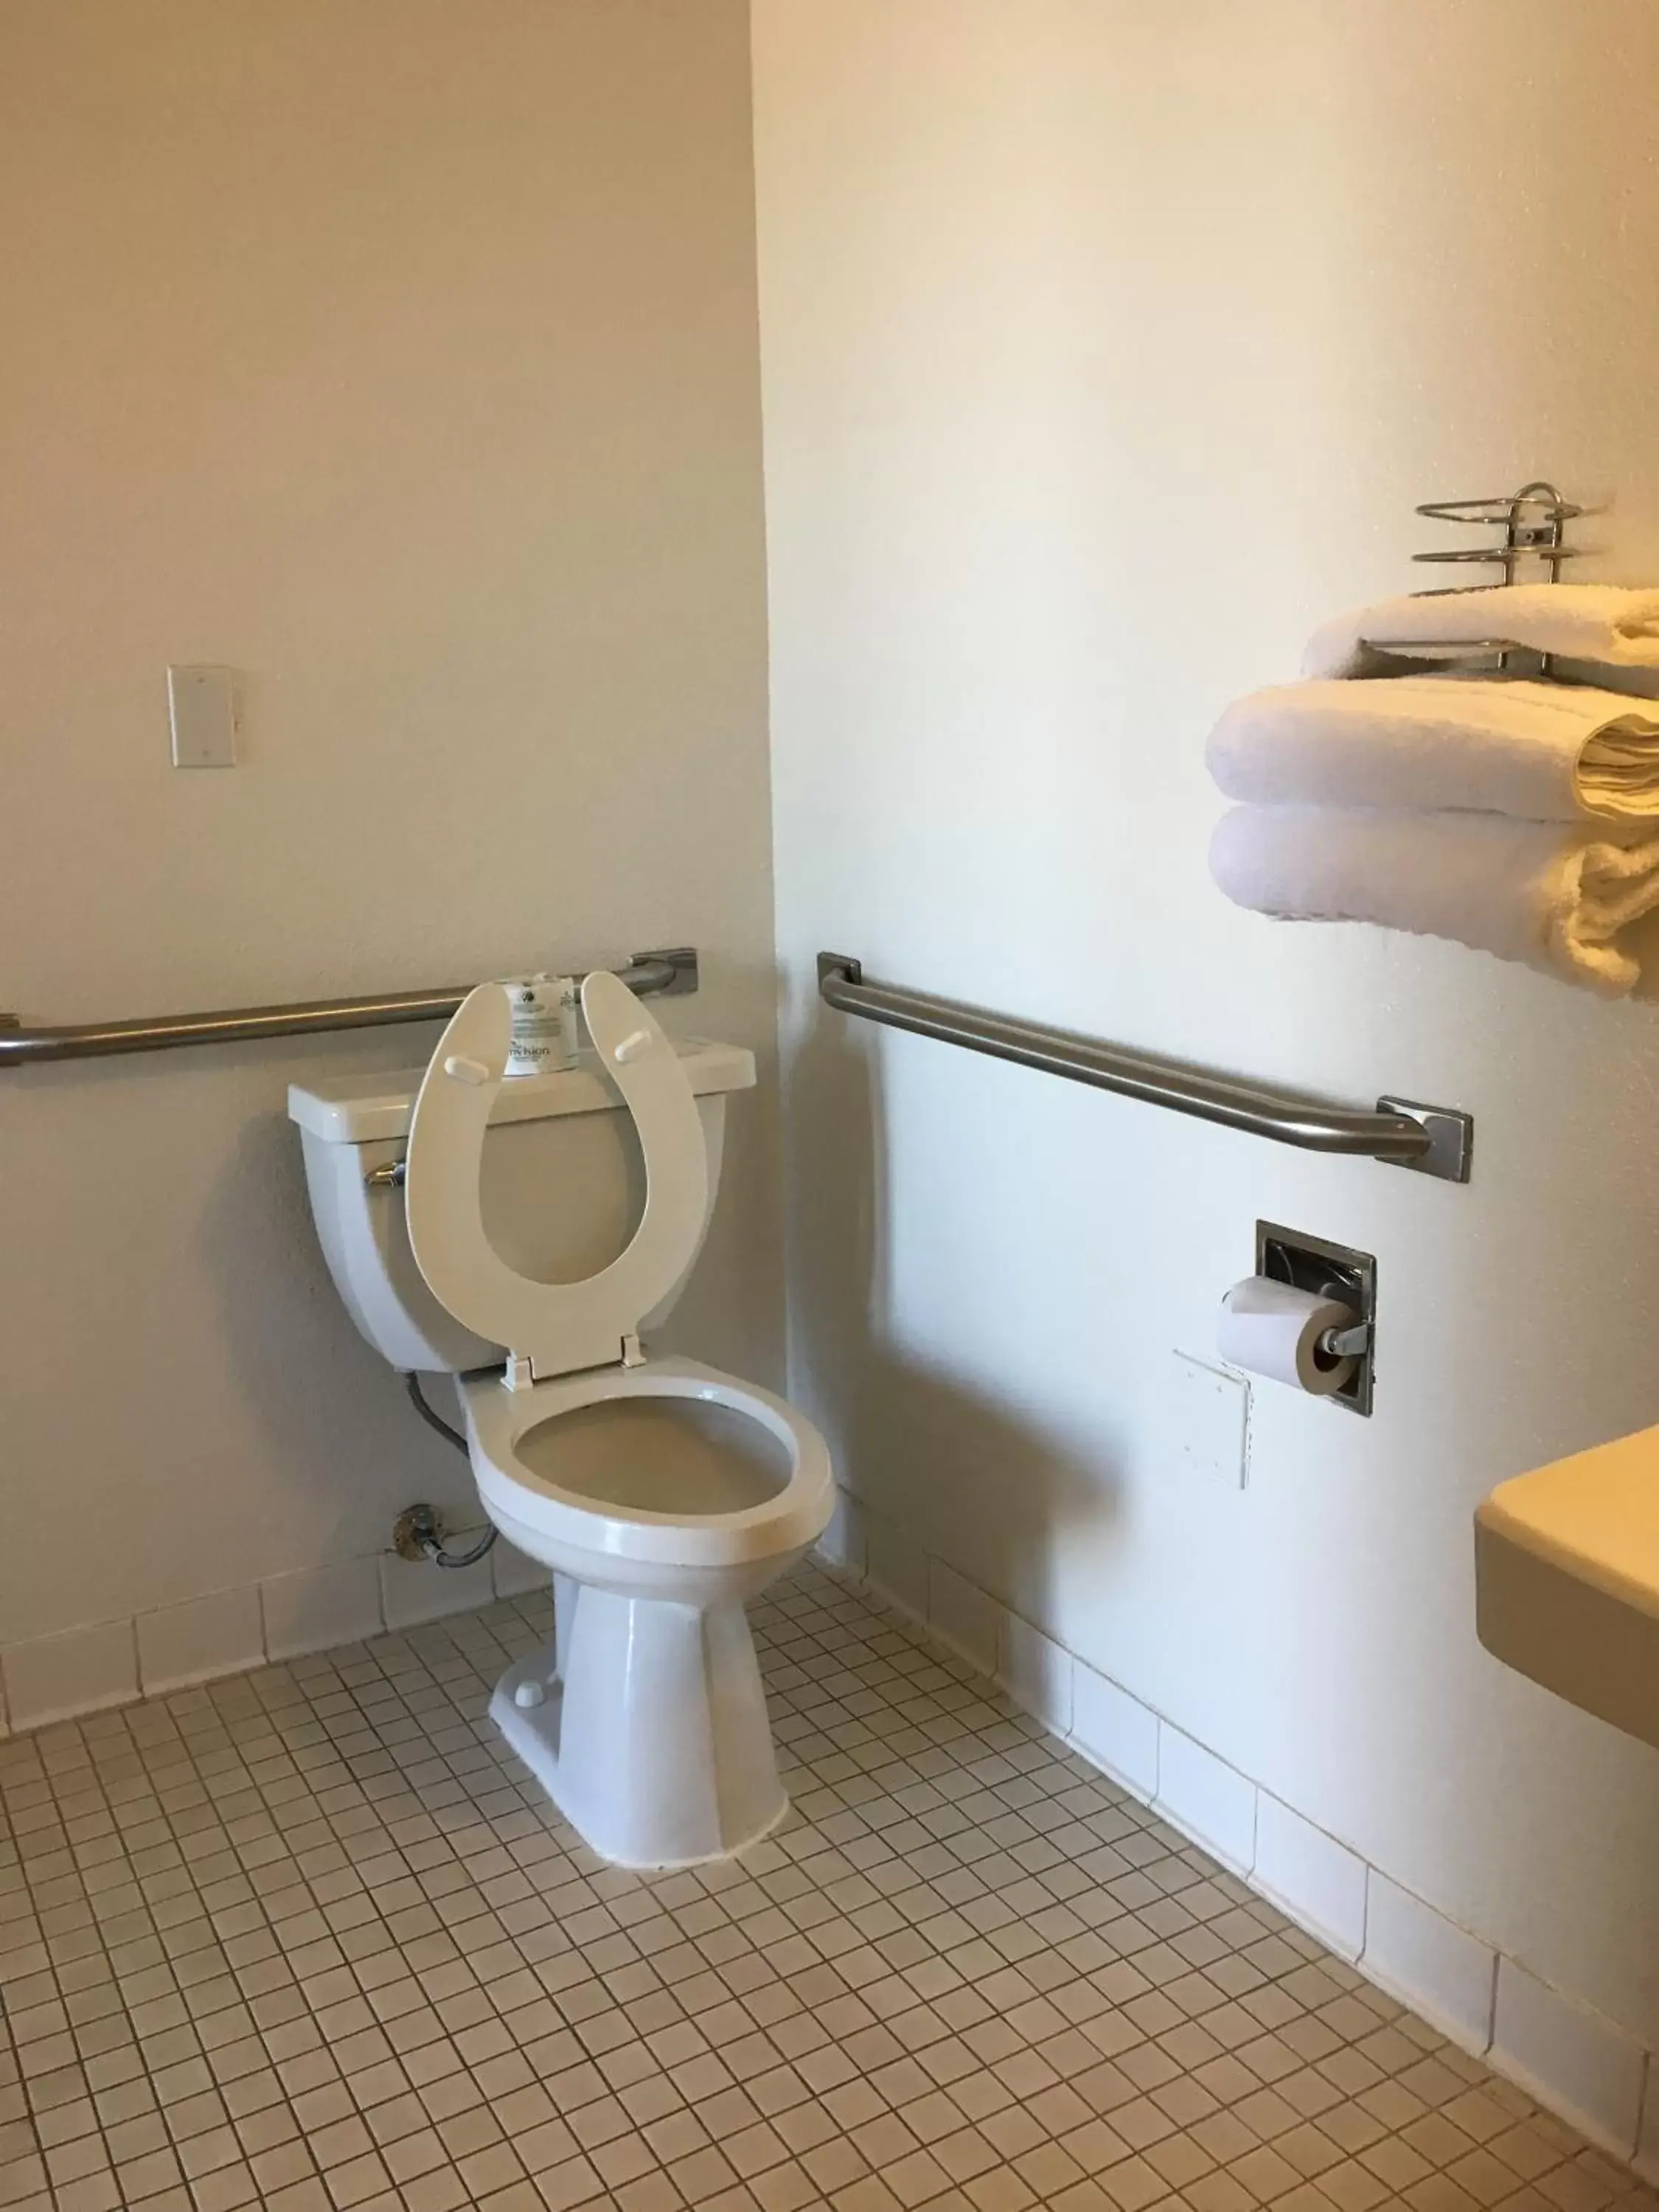 Bathroom in Motel 6-Tucumcari, NM